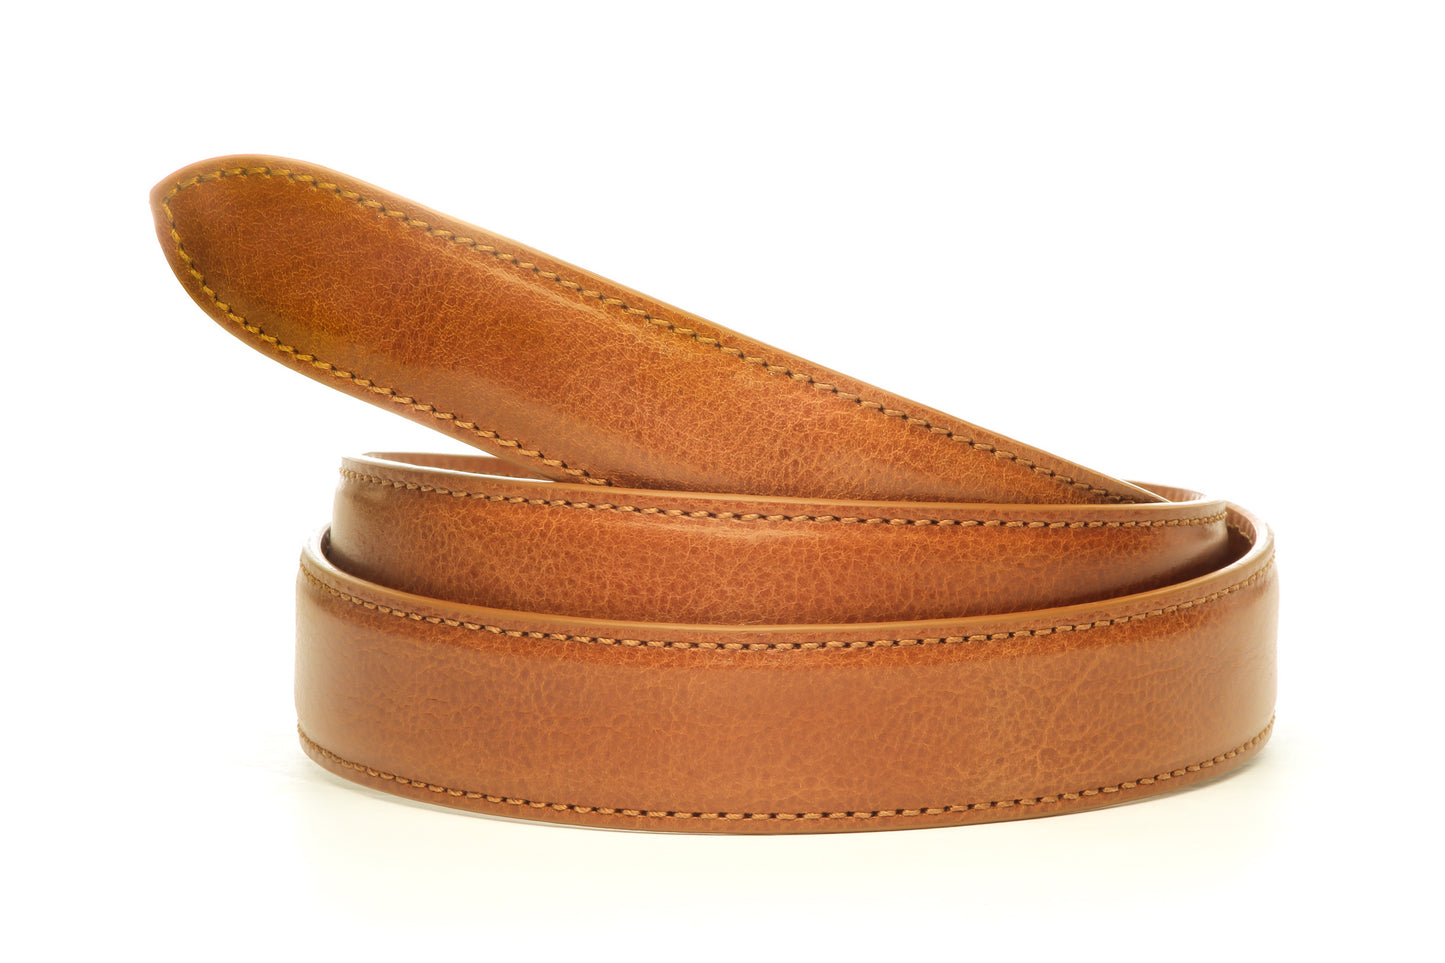 Men's Italian calfskin belt strap in tan with a 1.25-inch width, formal look, full roll